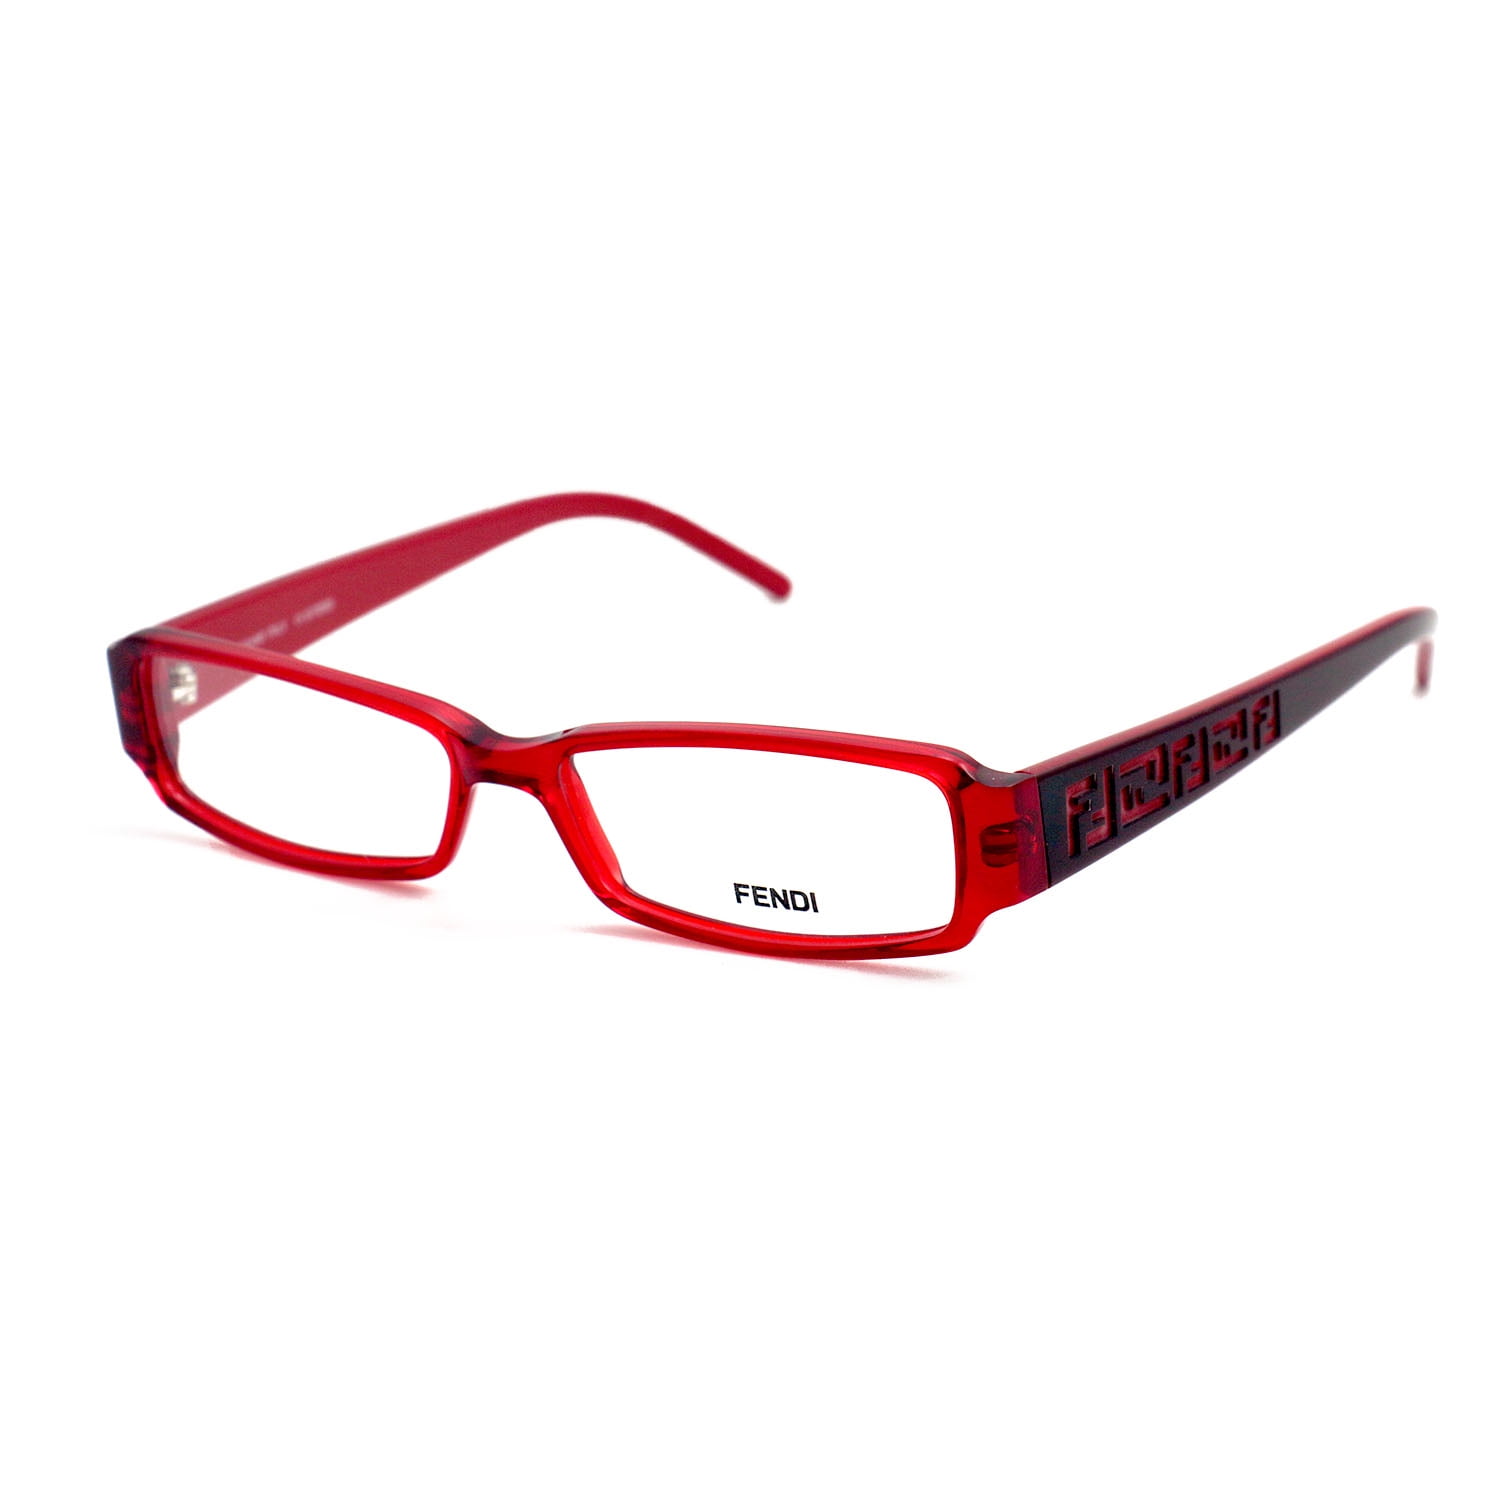 Fendi Eyeglasses Women Red Full Rim Rectangle 51 14 140 F664 603 ...